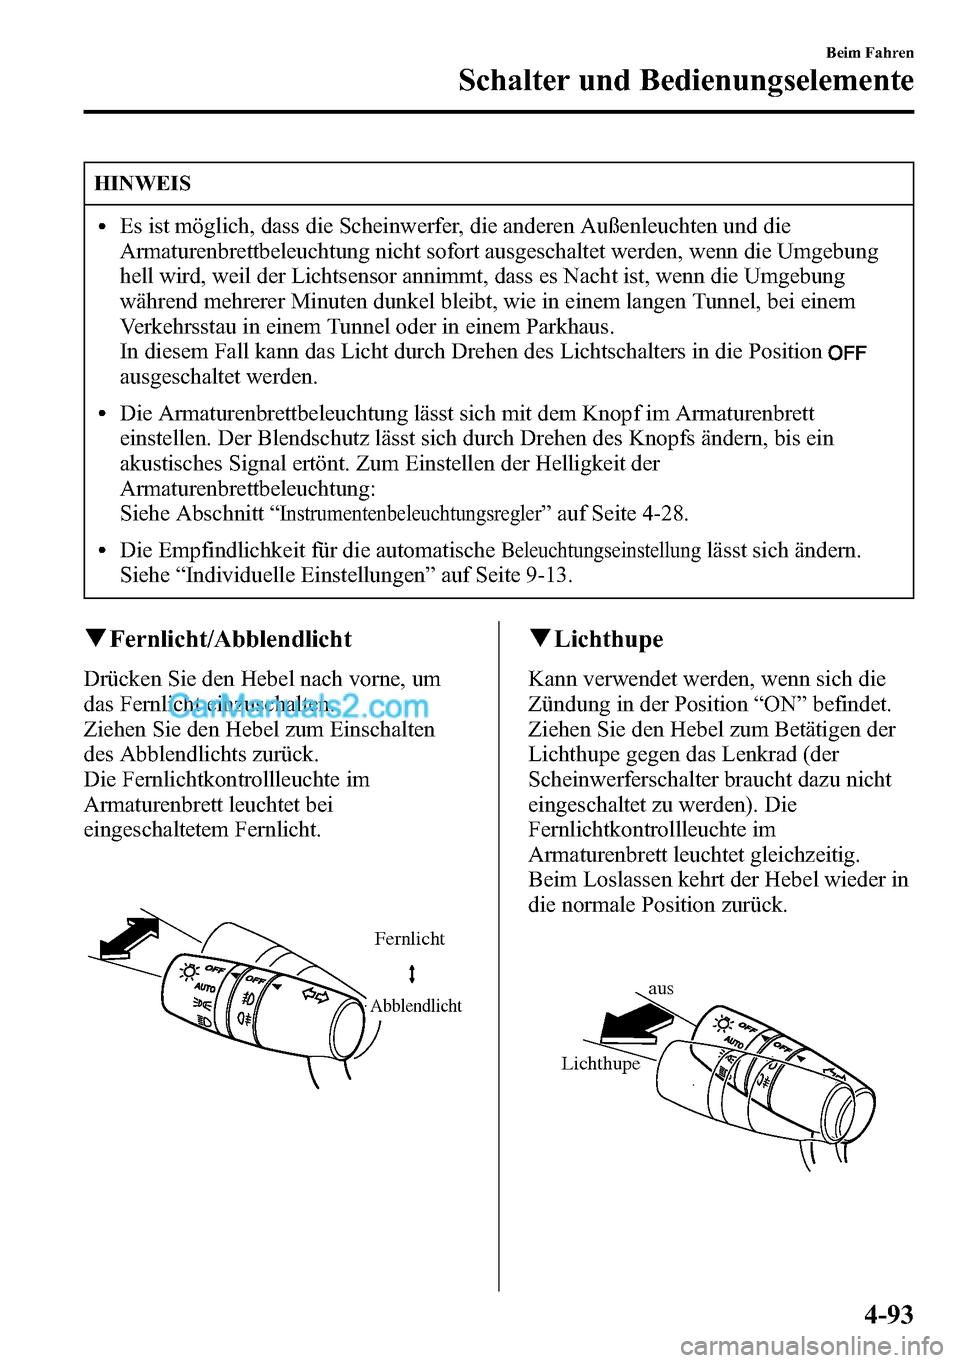 MAZDA MODEL CX-5 2016  Betriebsanleitung (in German) HINWEIS
lEs ist möglich, dass die Scheinwerfer, die anderen Außenleuchten und die
Armaturenbrettbeleuchtung nicht sofort ausgeschaltet werden, wenn die Umgebung
hell wird, weil der Lichtsensor annim